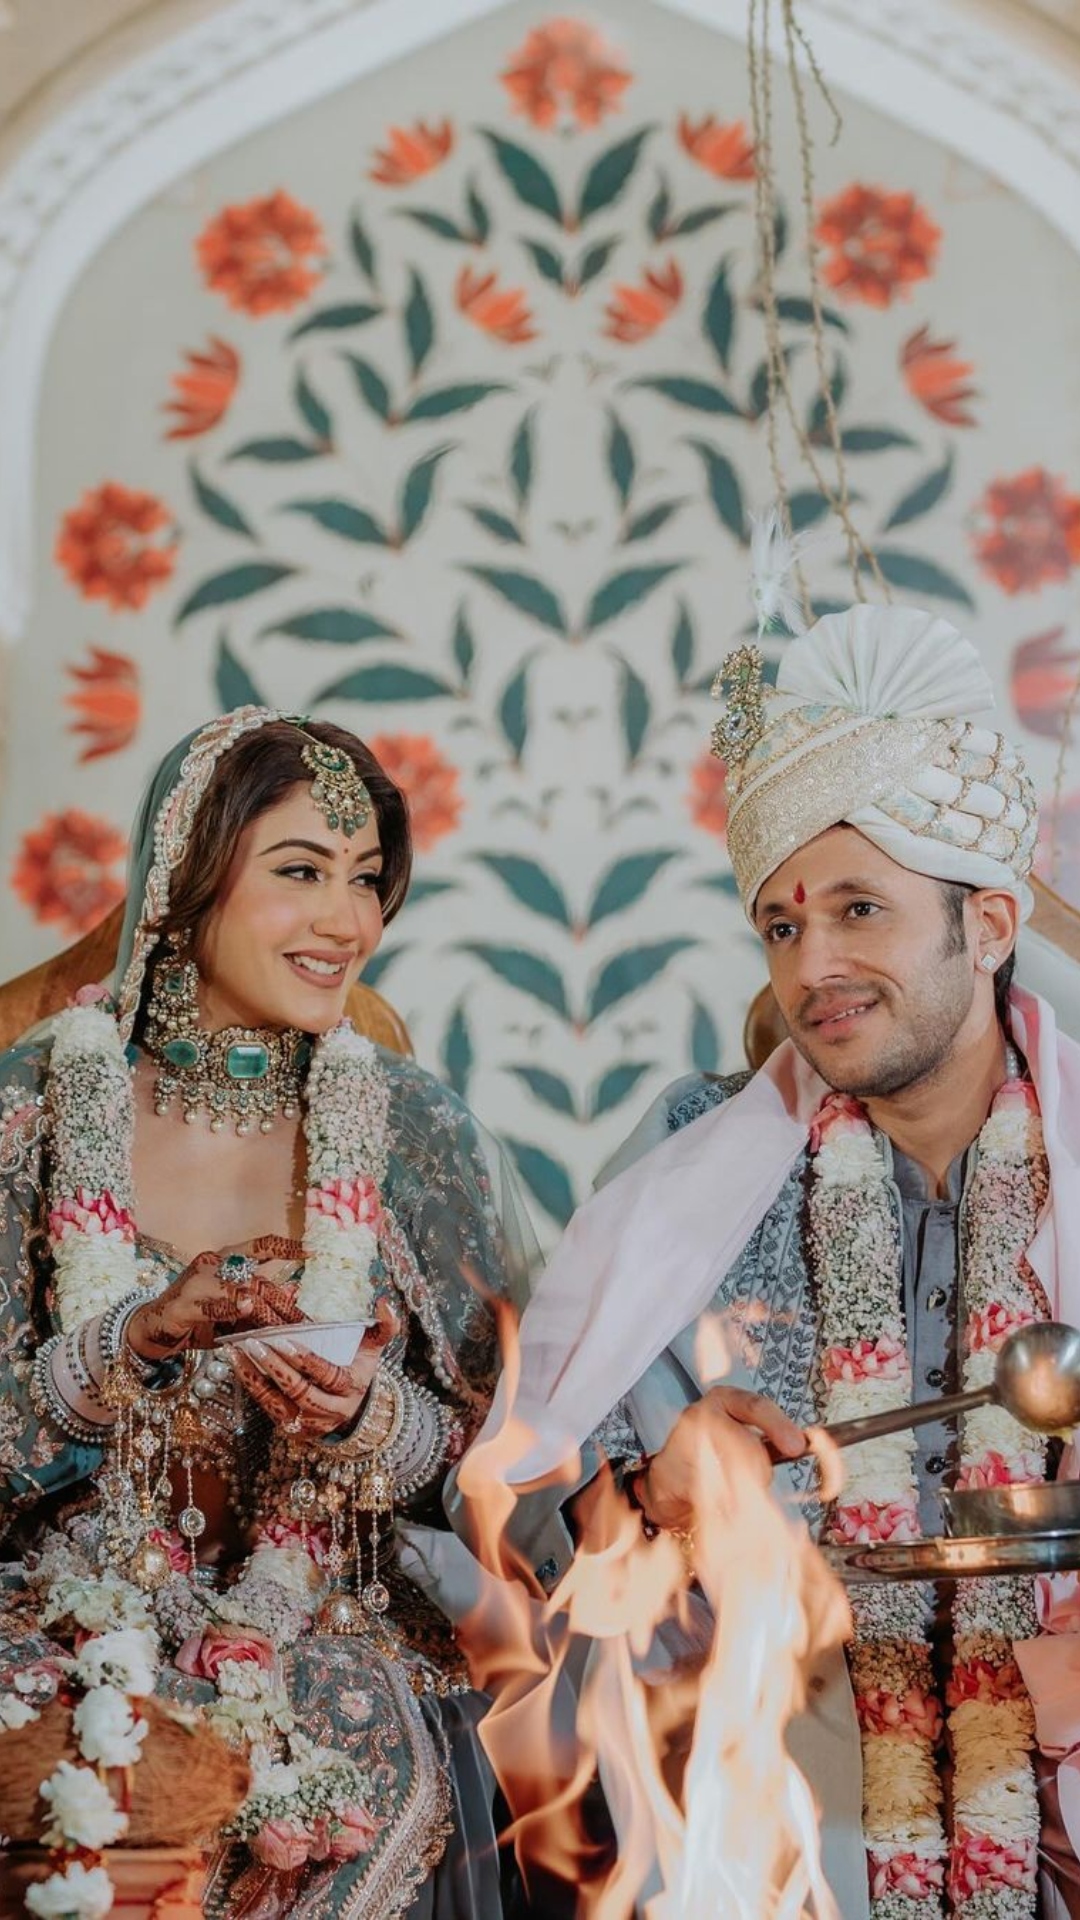 इश्कबाज फेम एक्ट्रेस सुरभि चंदना 2 मार्च को अपने बॉयफ्रेंड करण शर्मा के साथ शादी के बंधन मे बंध गयीं हैं। इस खूबसूरत जोड़े की शादी की तस्वीरें सोशल मीडिया पर तेजी से वायरल हो रही हैं। सोशल मीडिया पर वायरल तस्वीरों मे सुरभि बेहद खूबसूरत और खुश नजर आ रहीं हैं।